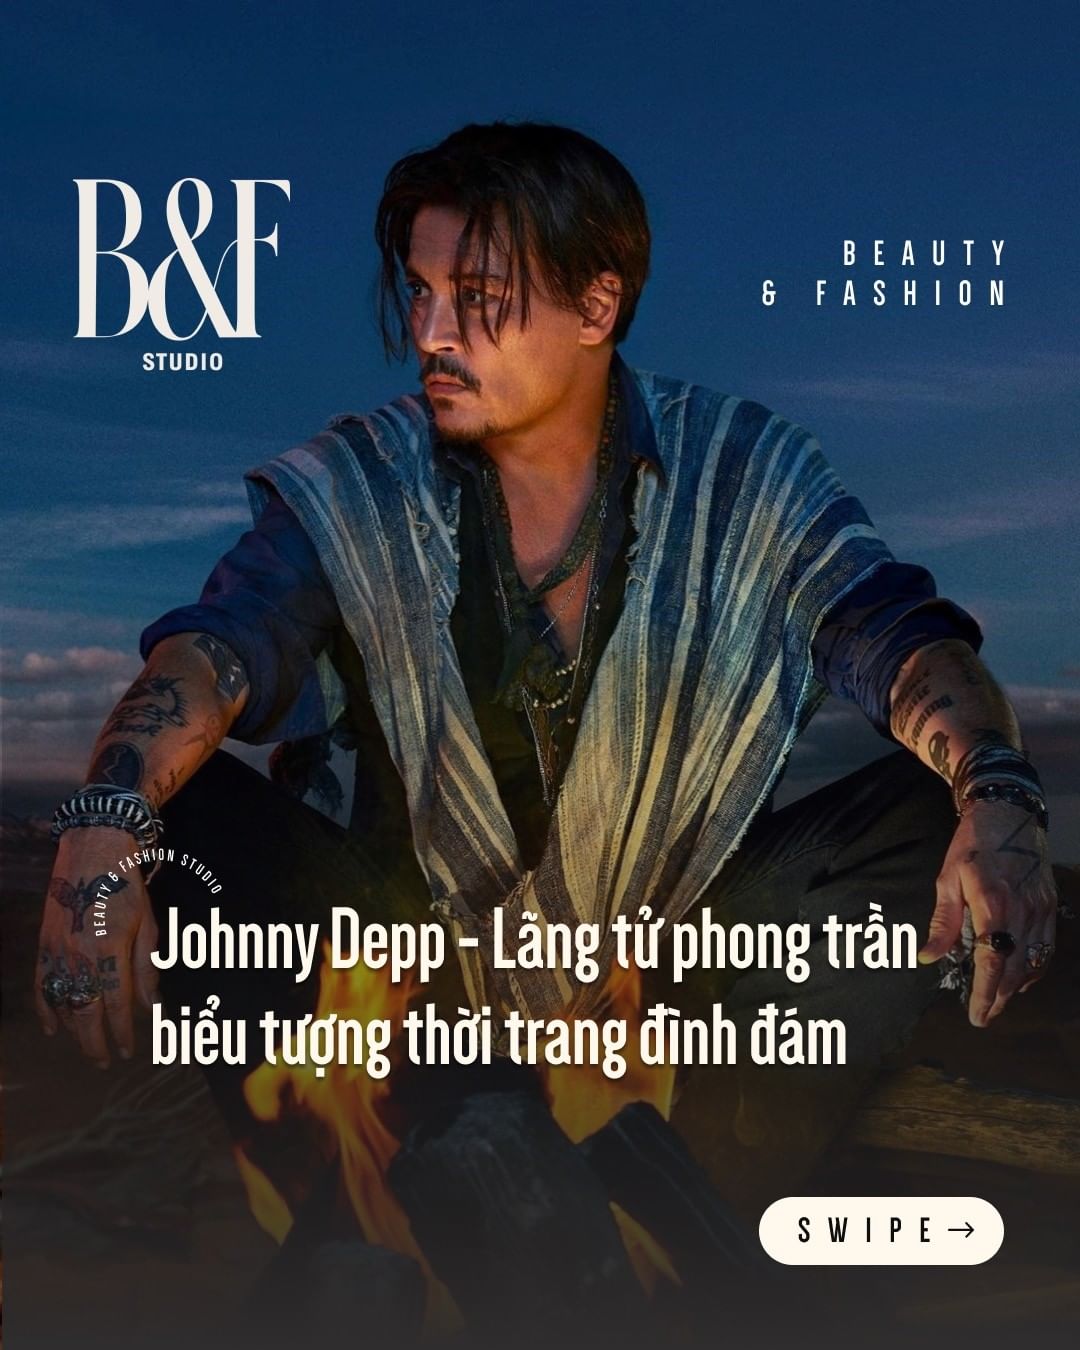 Johnny Depp: Chàng lãng tử đam mê phụ kiện, người hiếm hoi khiến Dior khó có thể quay lưng - Ảnh 1.